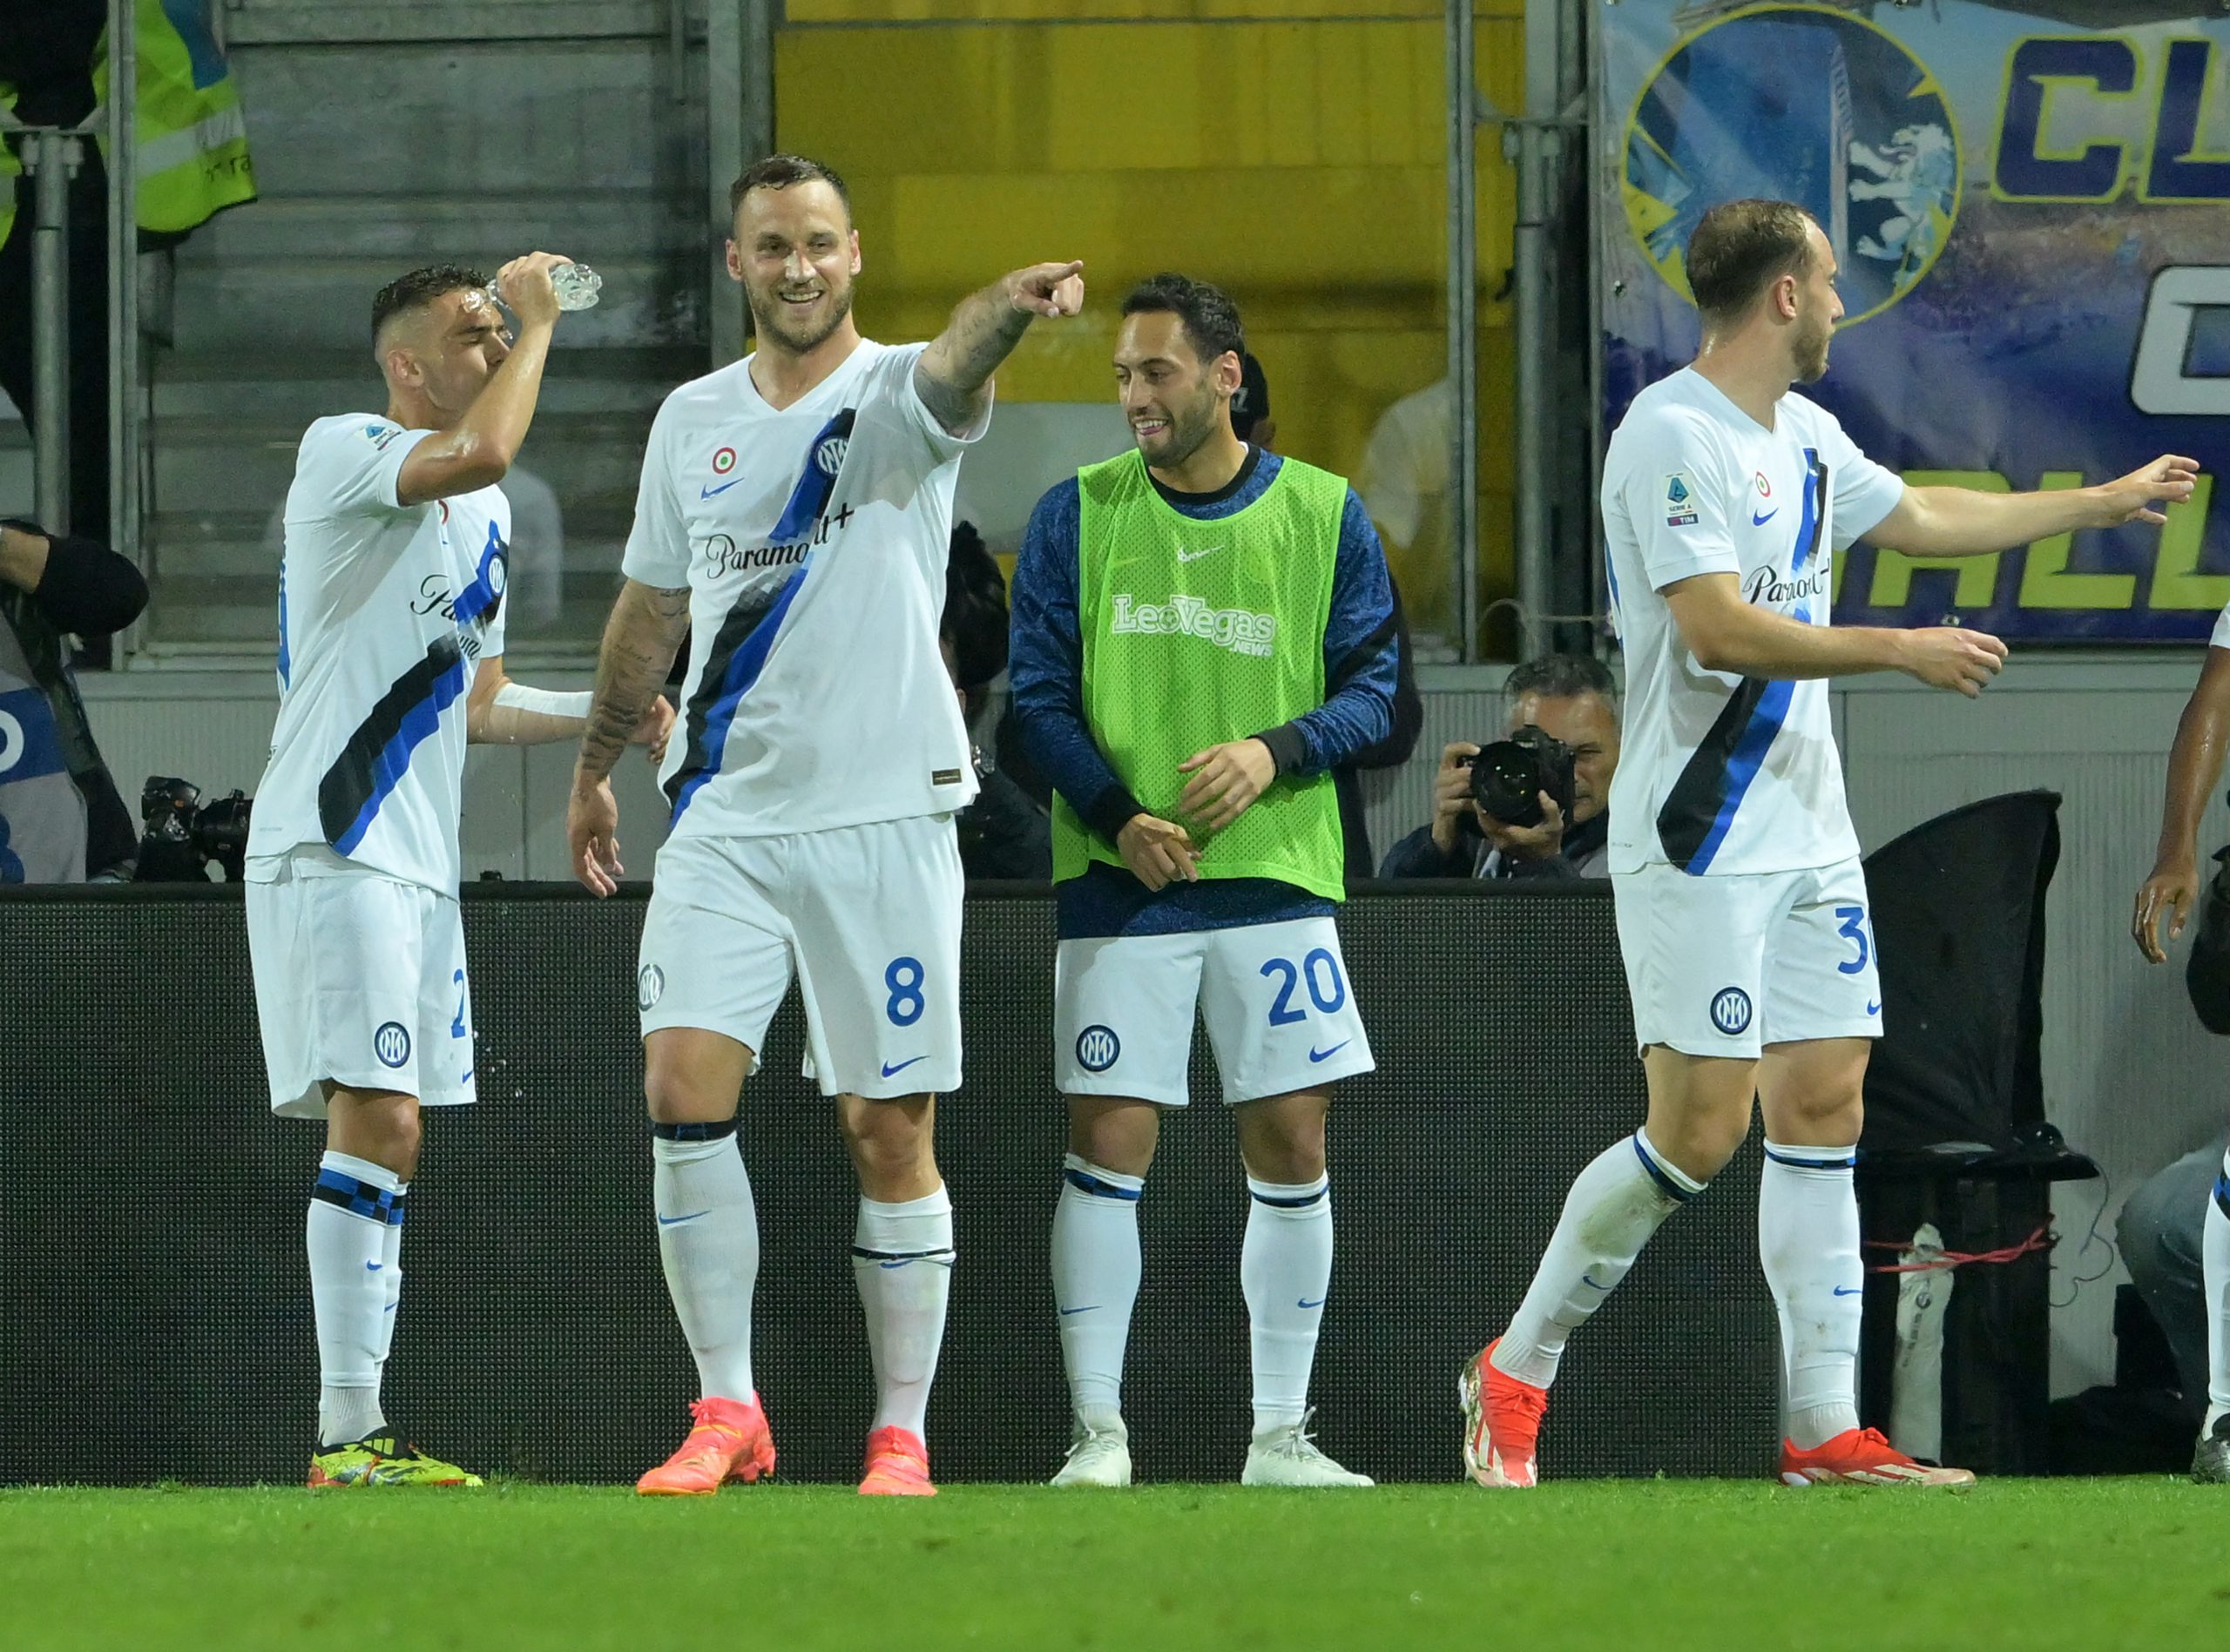 VIDEO – Frosinone Inter 0 5, Serie A: gol e highlights della partita